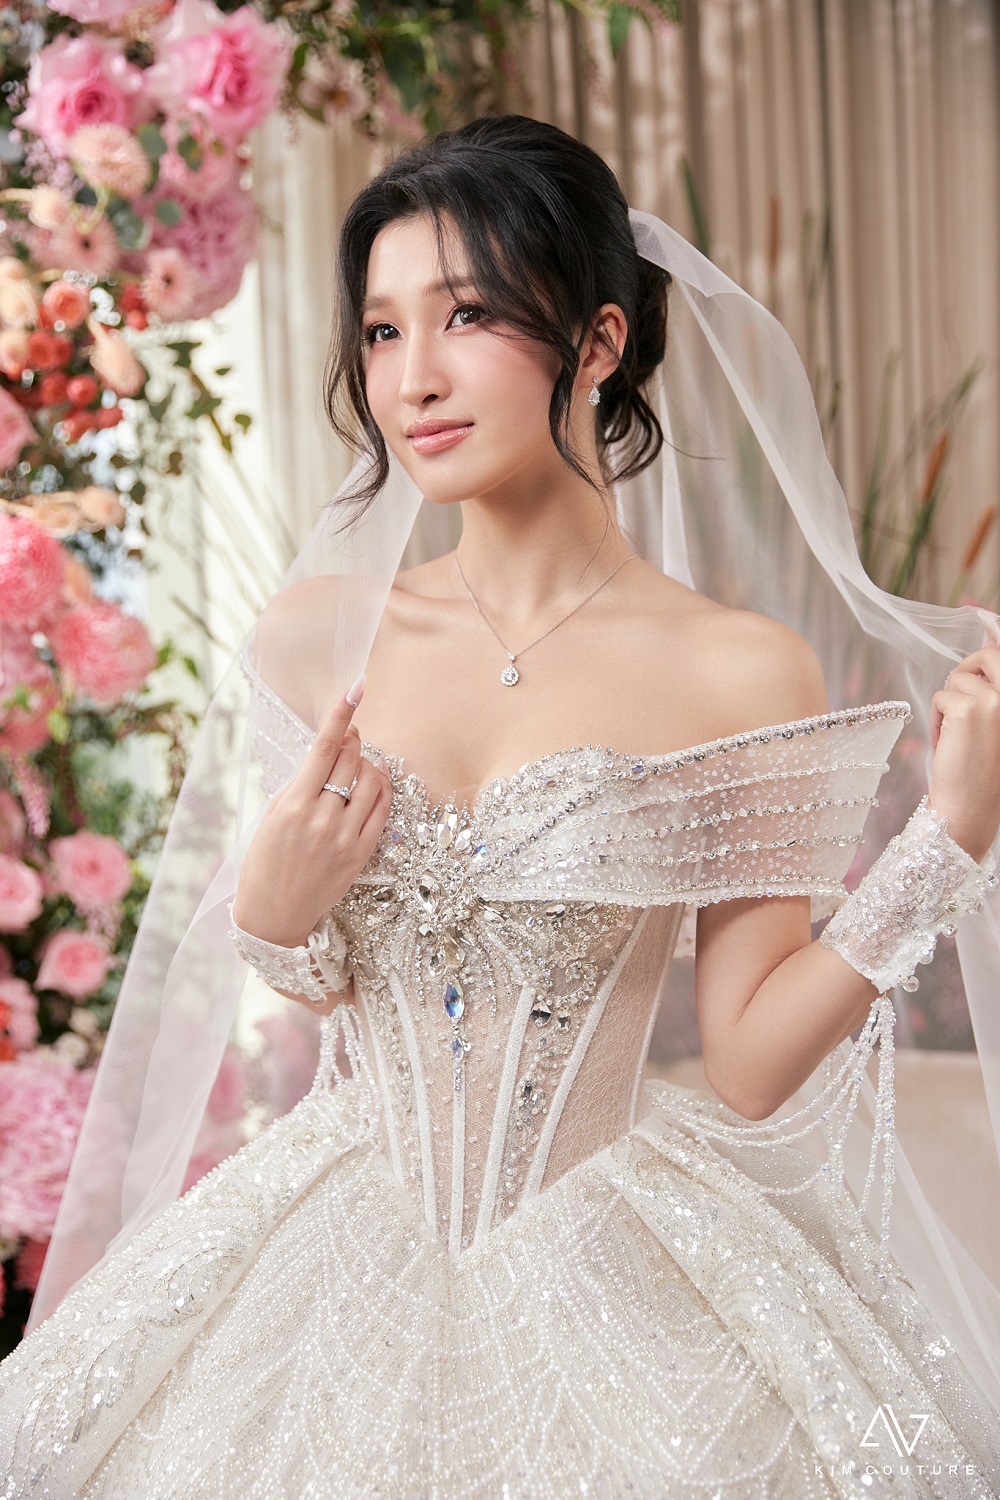 Chiêm ngưỡng vẻ đẹp lộng lẫy của Á hậu Phương Nhi khi diện váy cưới - Ảnh 4.